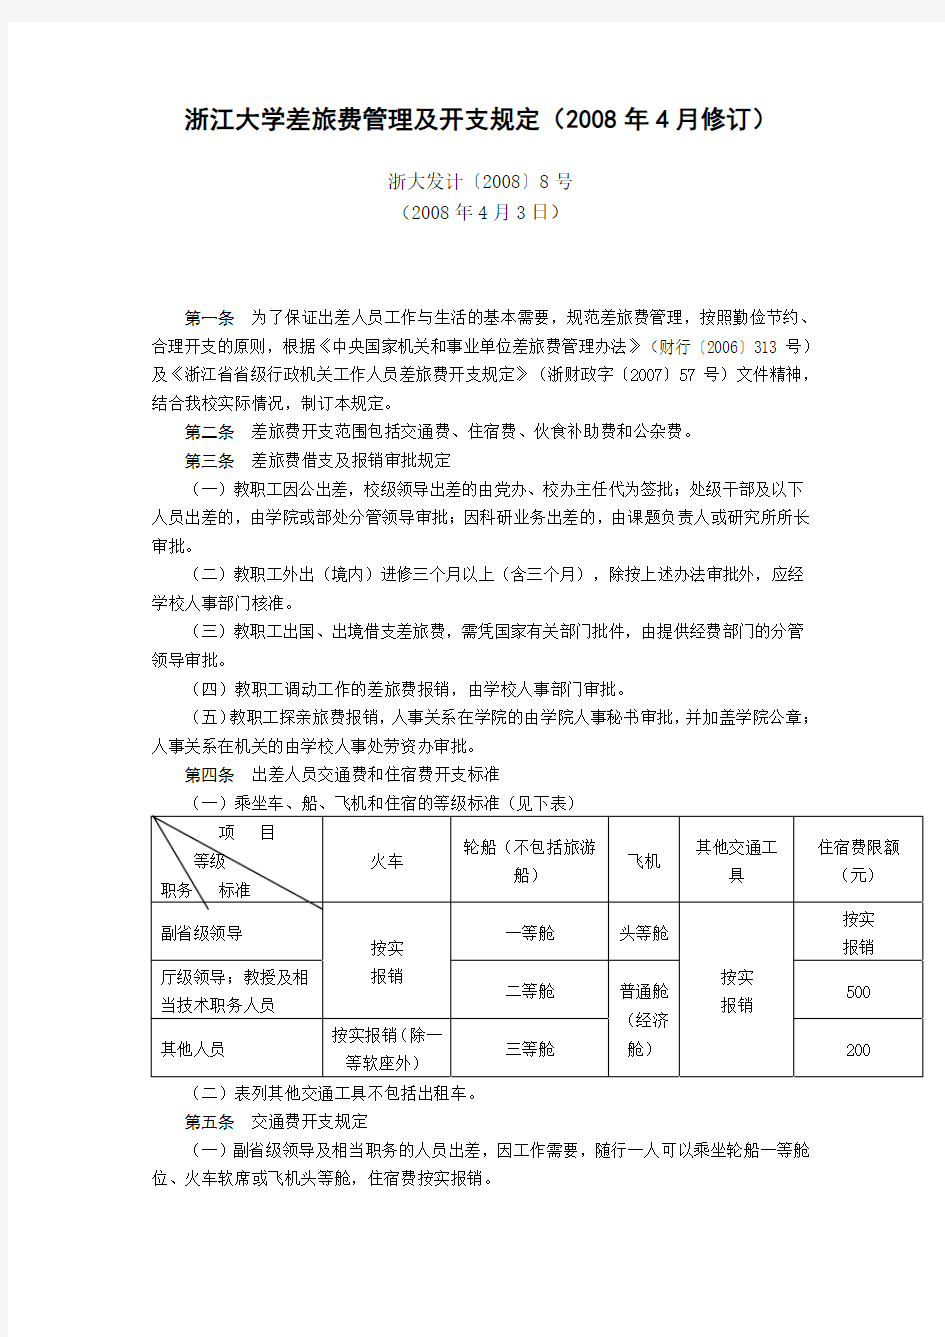 浙江大学差旅费管理及开支规定(2008年4月修订)